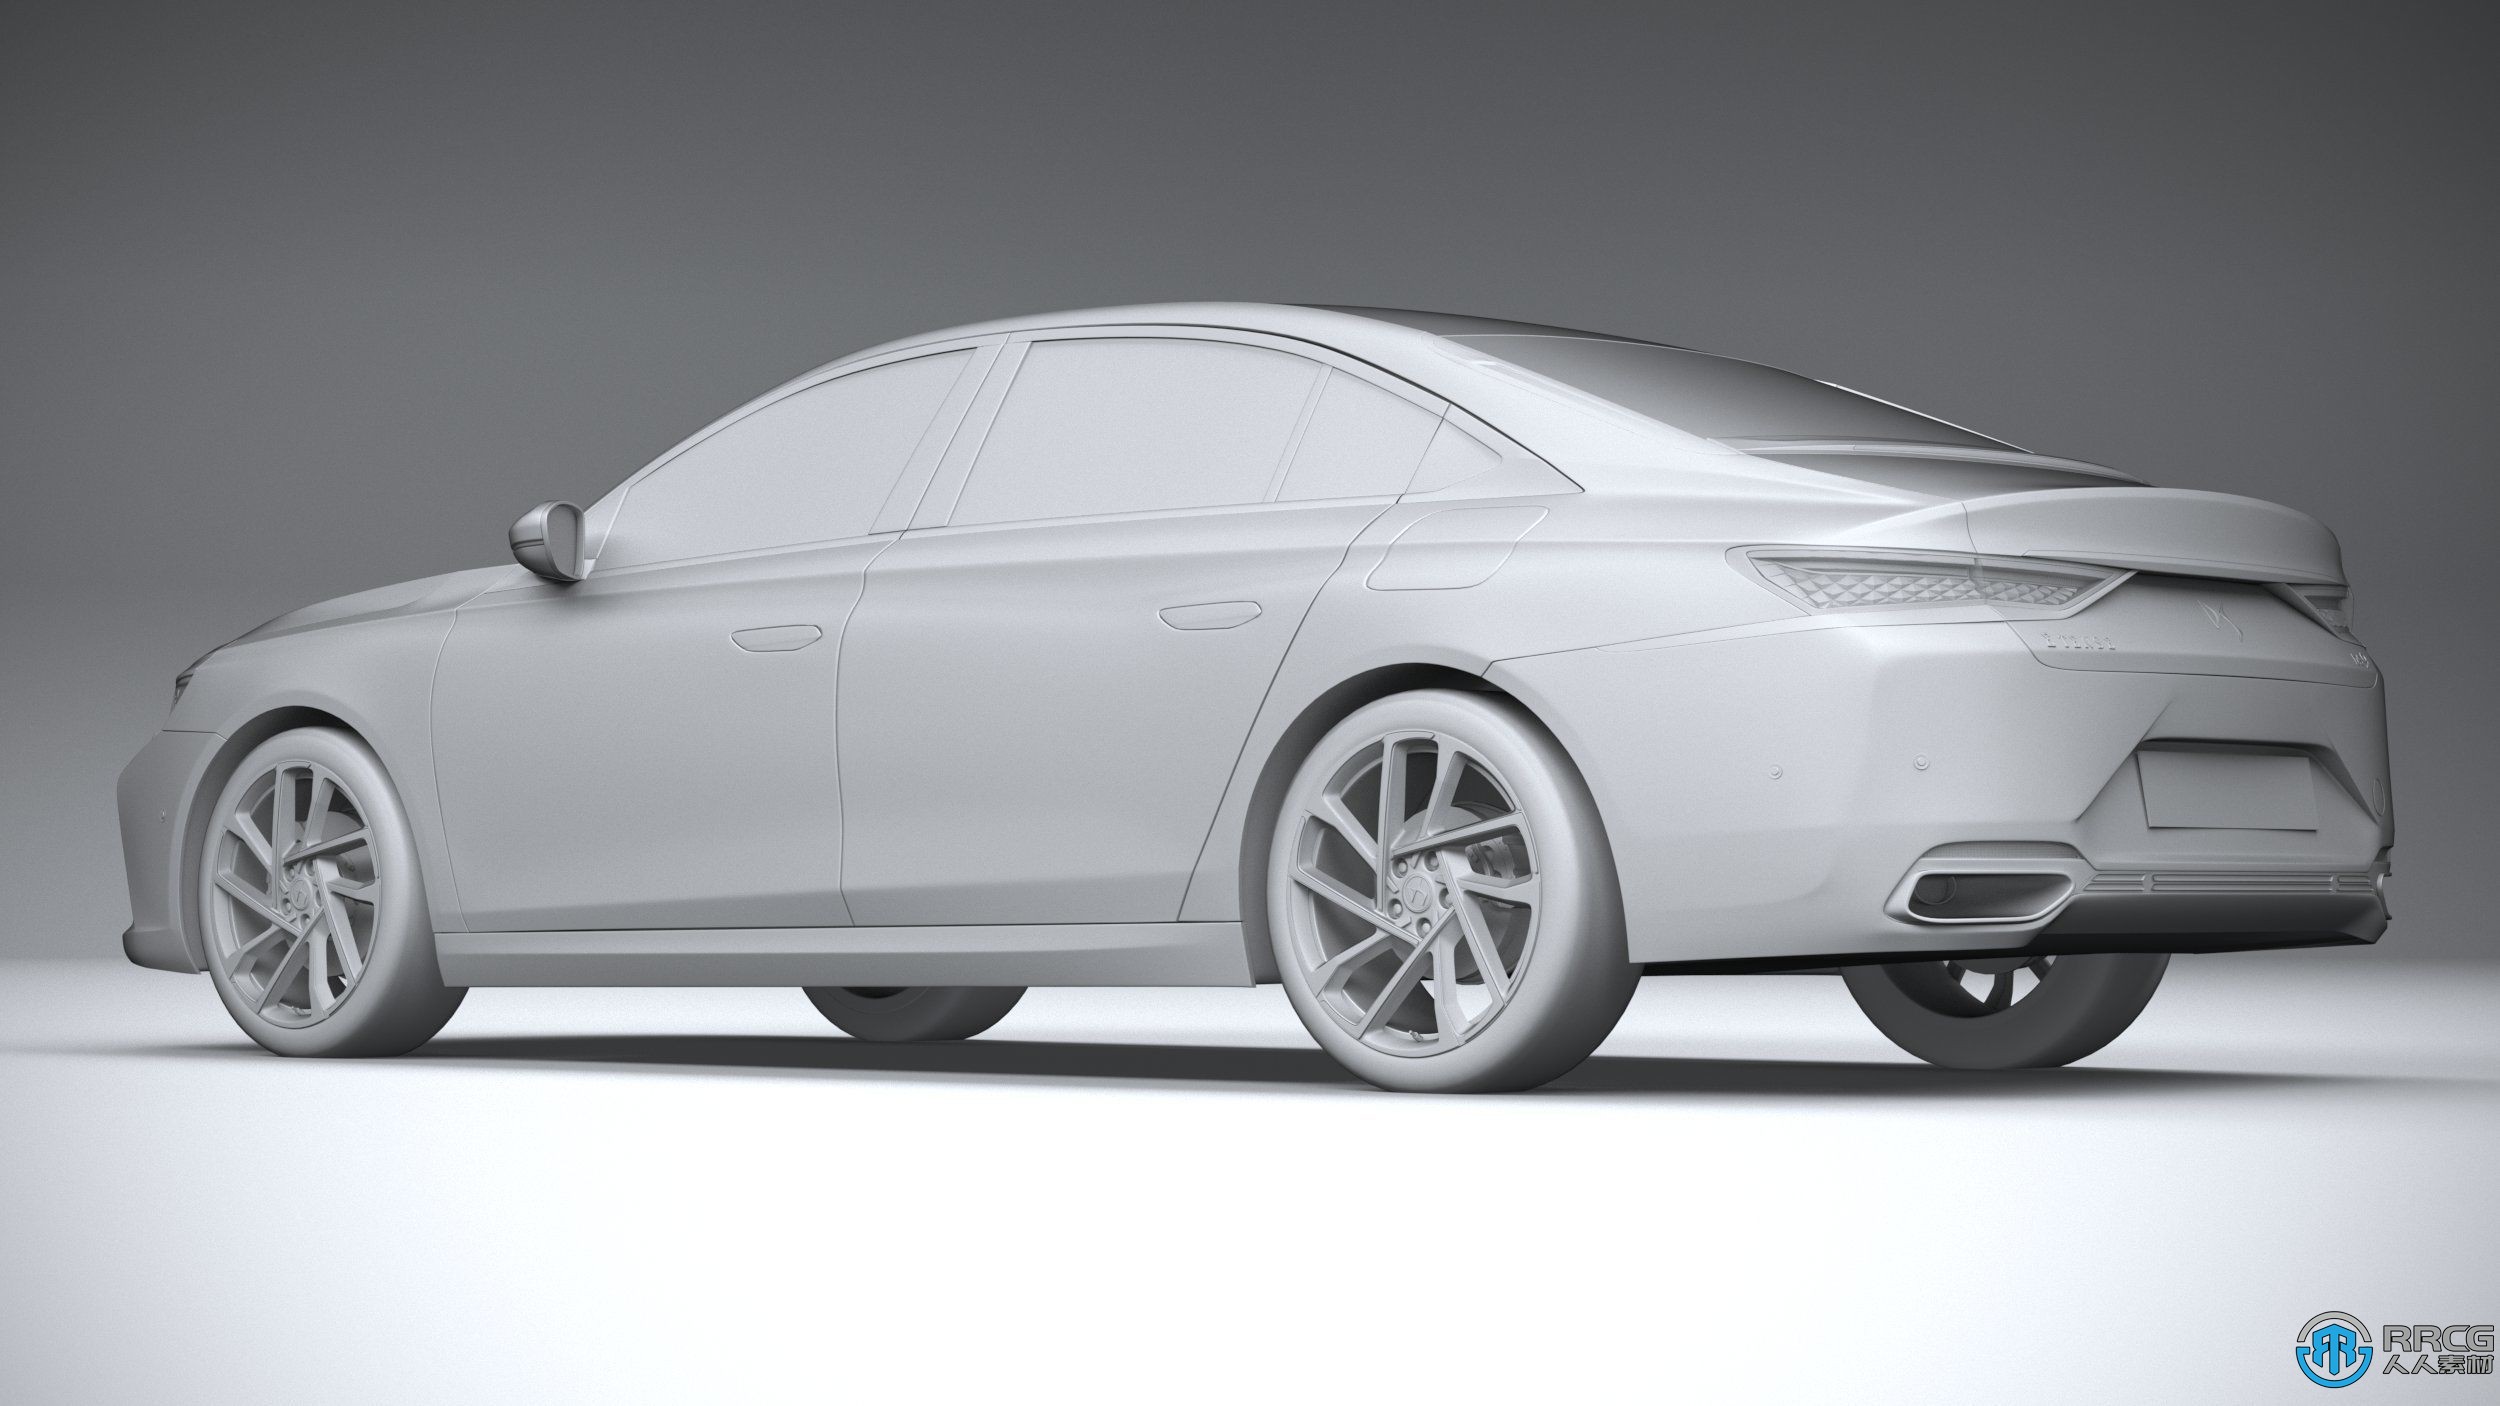 雪铁龙DS9 2021款豪华轿车汽车3D模型